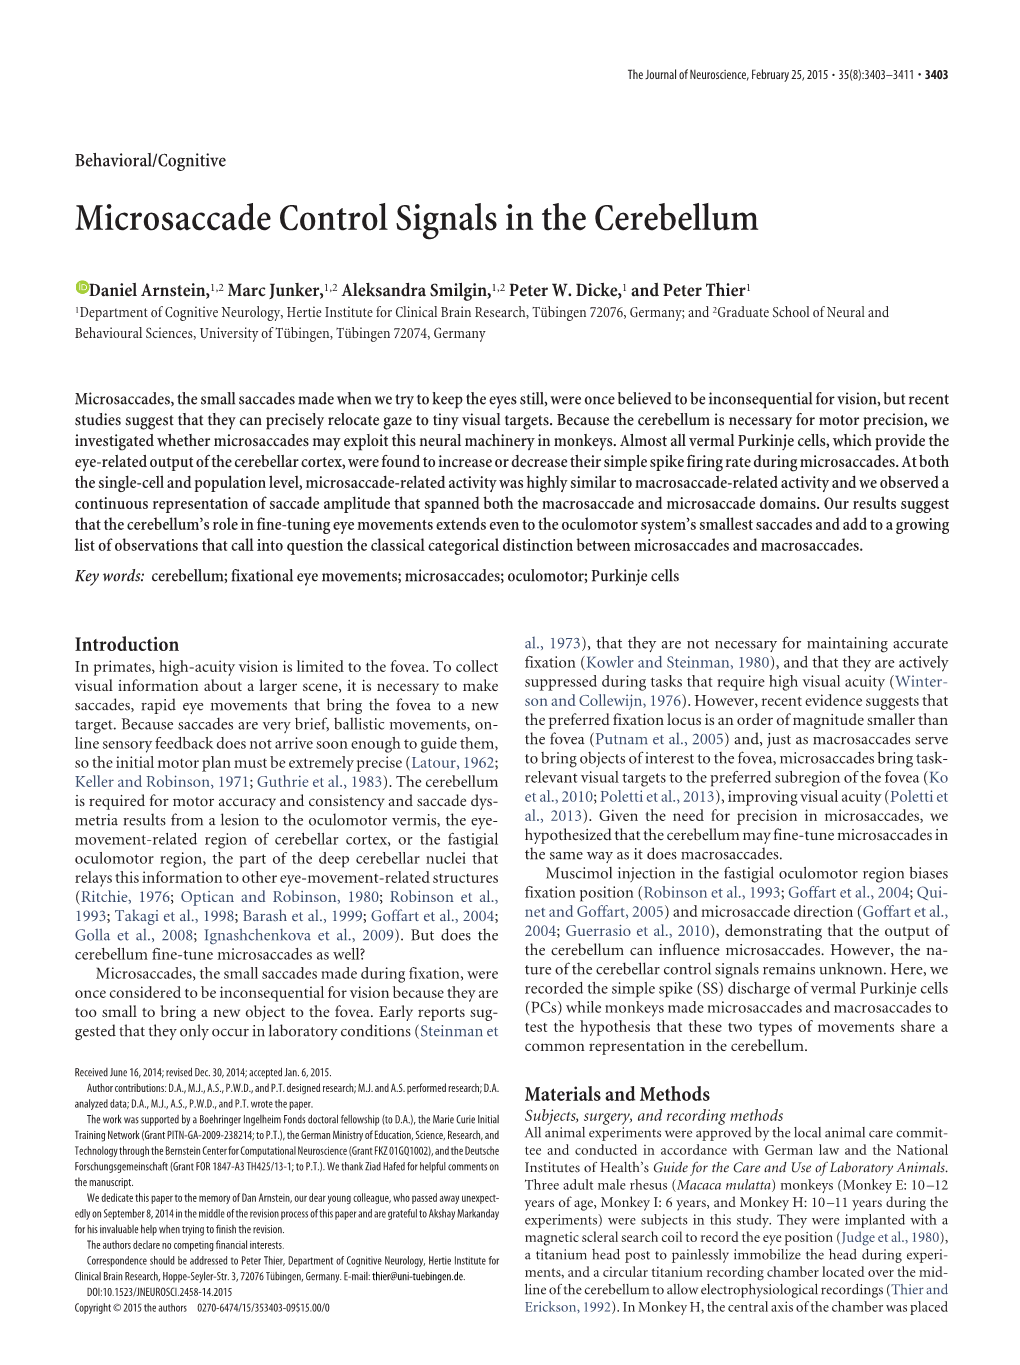 Microsaccade Control Signals in the Cerebellum